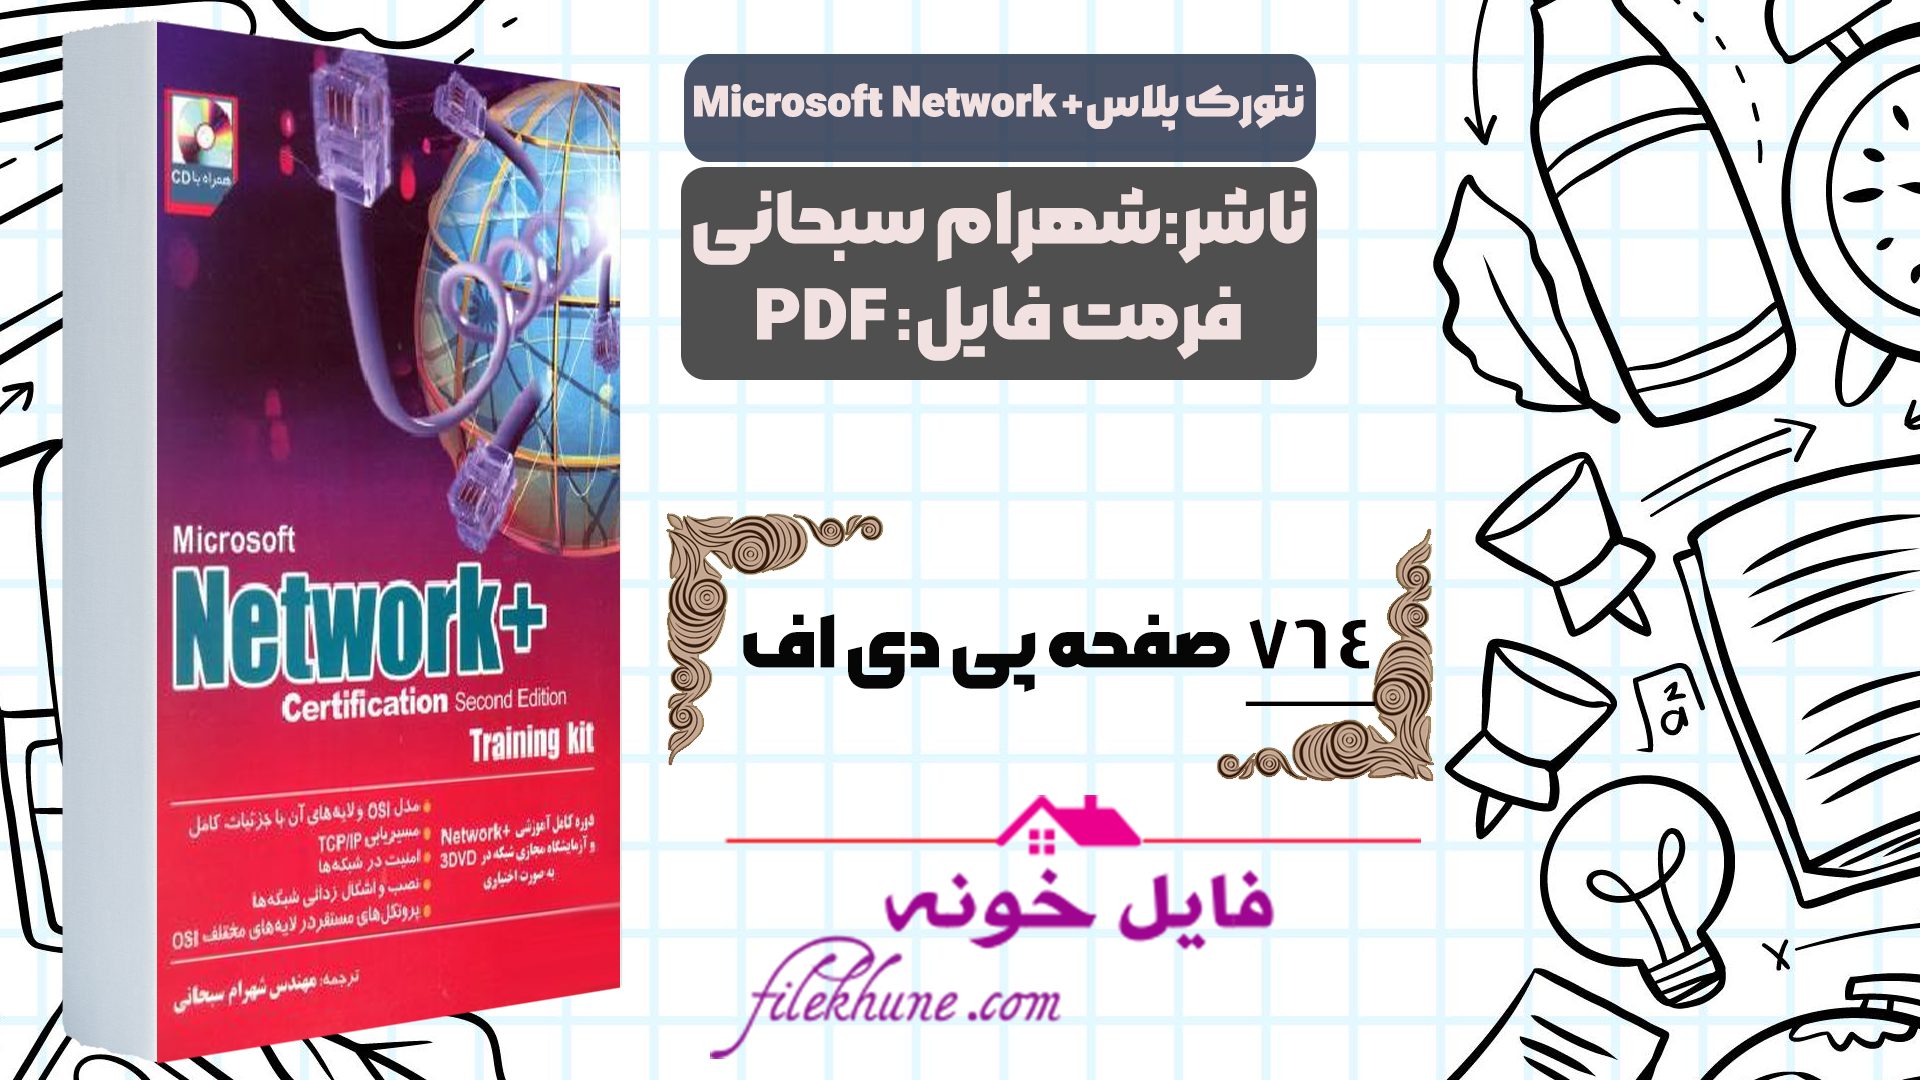 دانلود کتاب نتورک پلاس +Microsoft Network ترجمه شهرام سبحانی PDF - فایل خونه